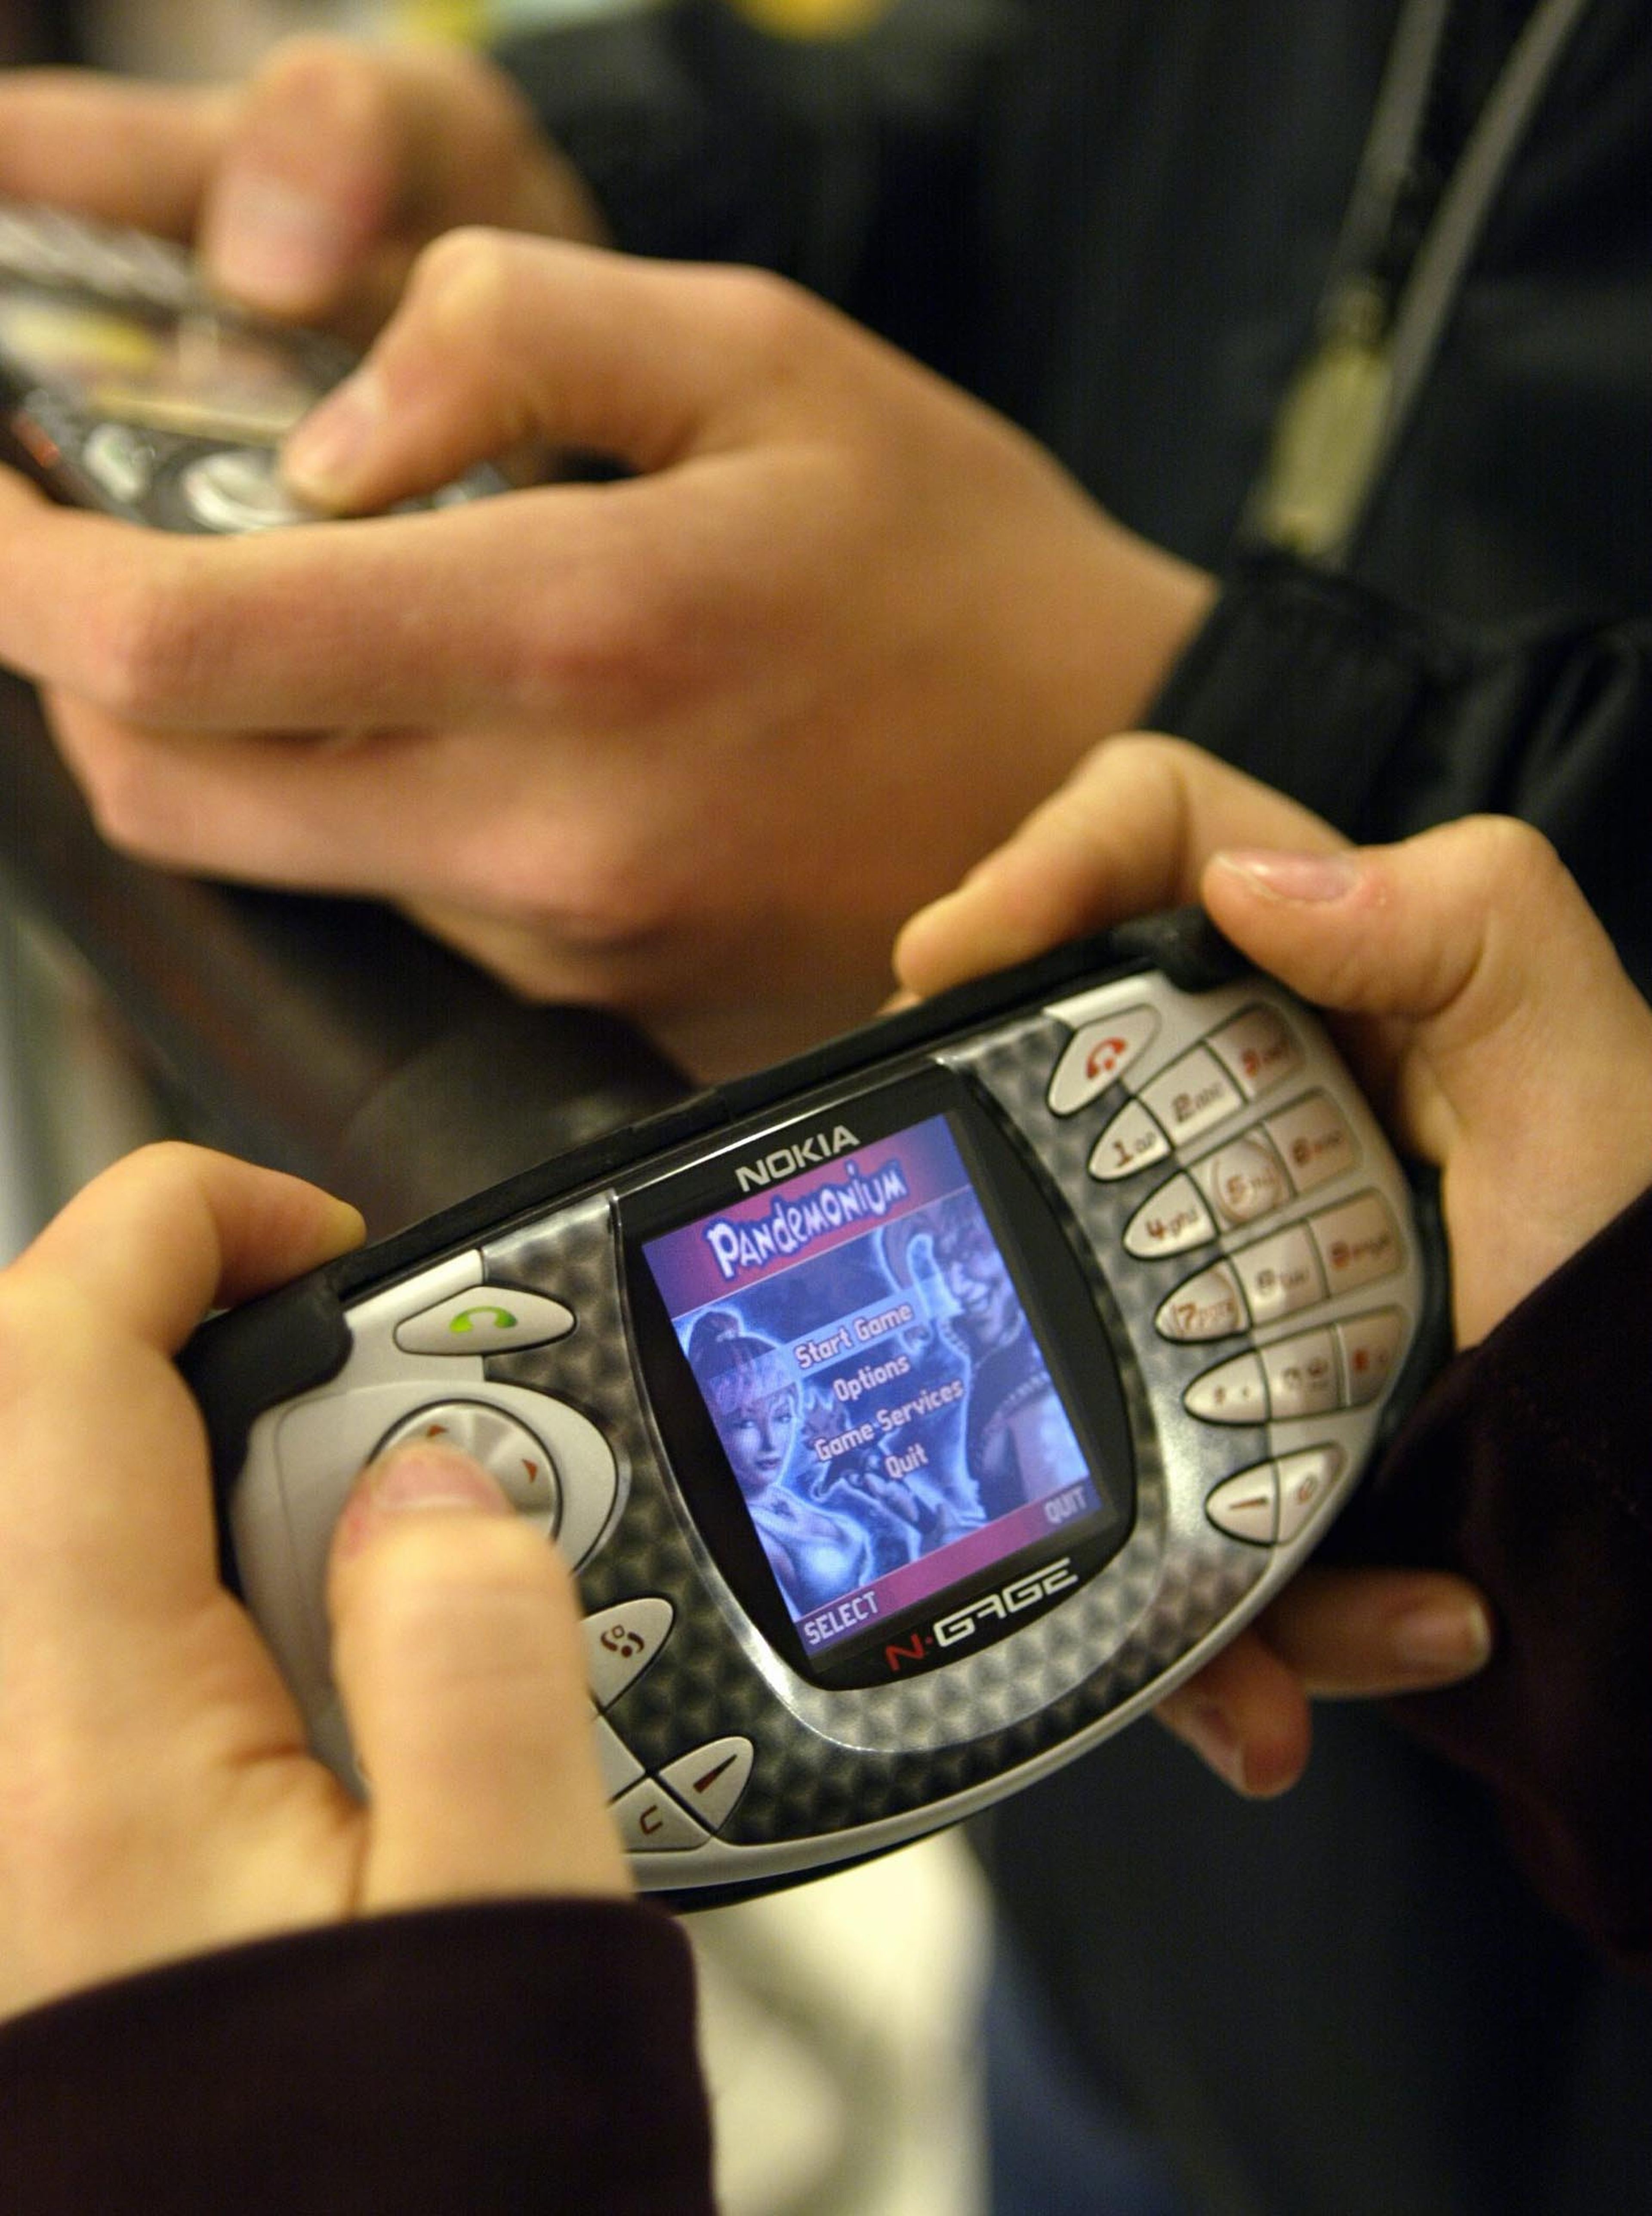 Un usuario juega con un Nokia N-gage.